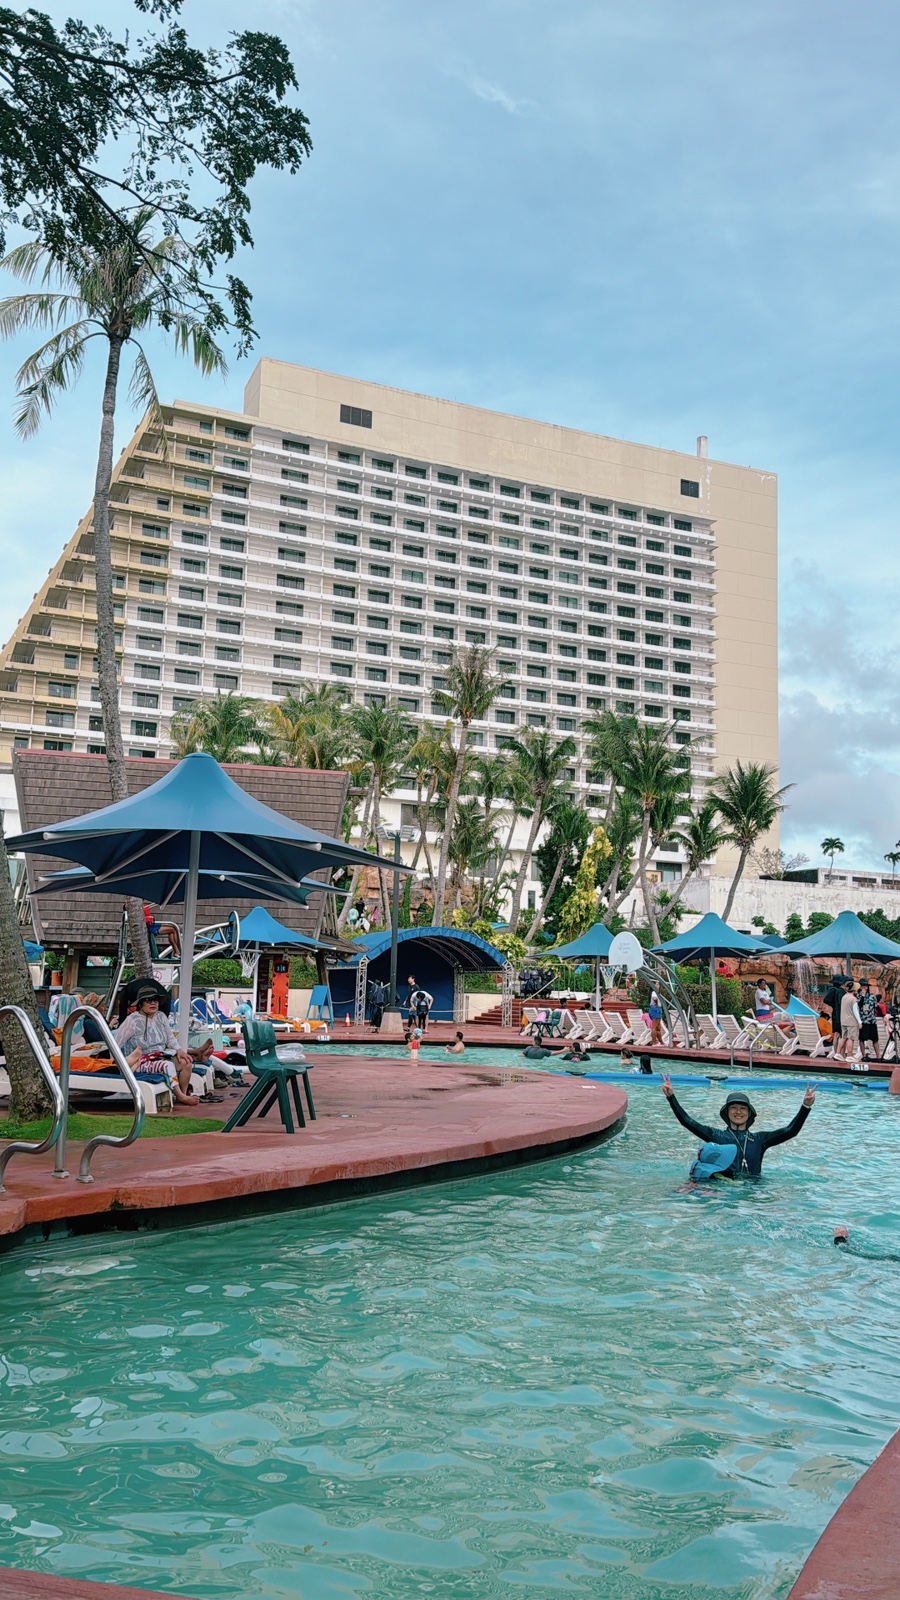 괌태교여행 PIC 로얄클럽룸 4박5일 : 룸컨디션 , 체크인 첫날부터 물놀이